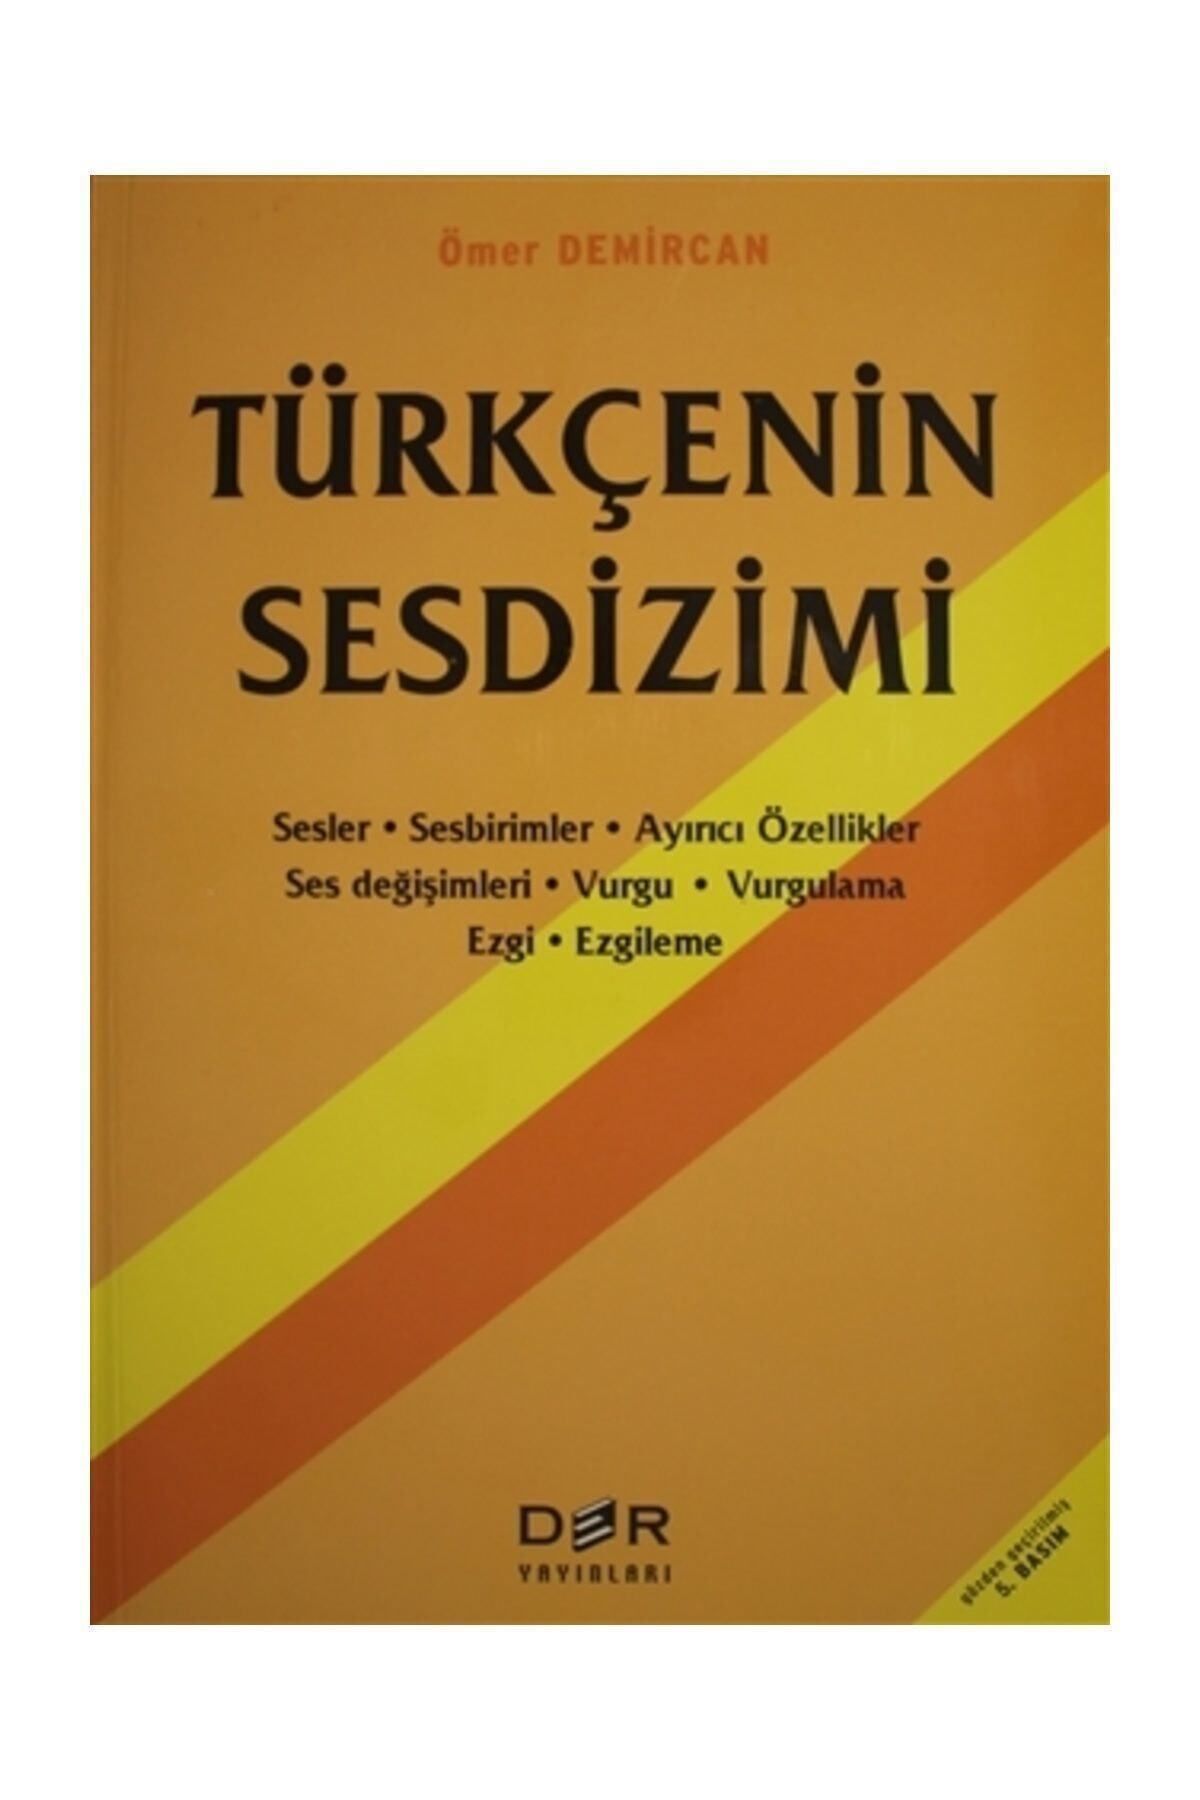 Der Yayınları Türkçenin Sesdizimi - Ömer Demircan